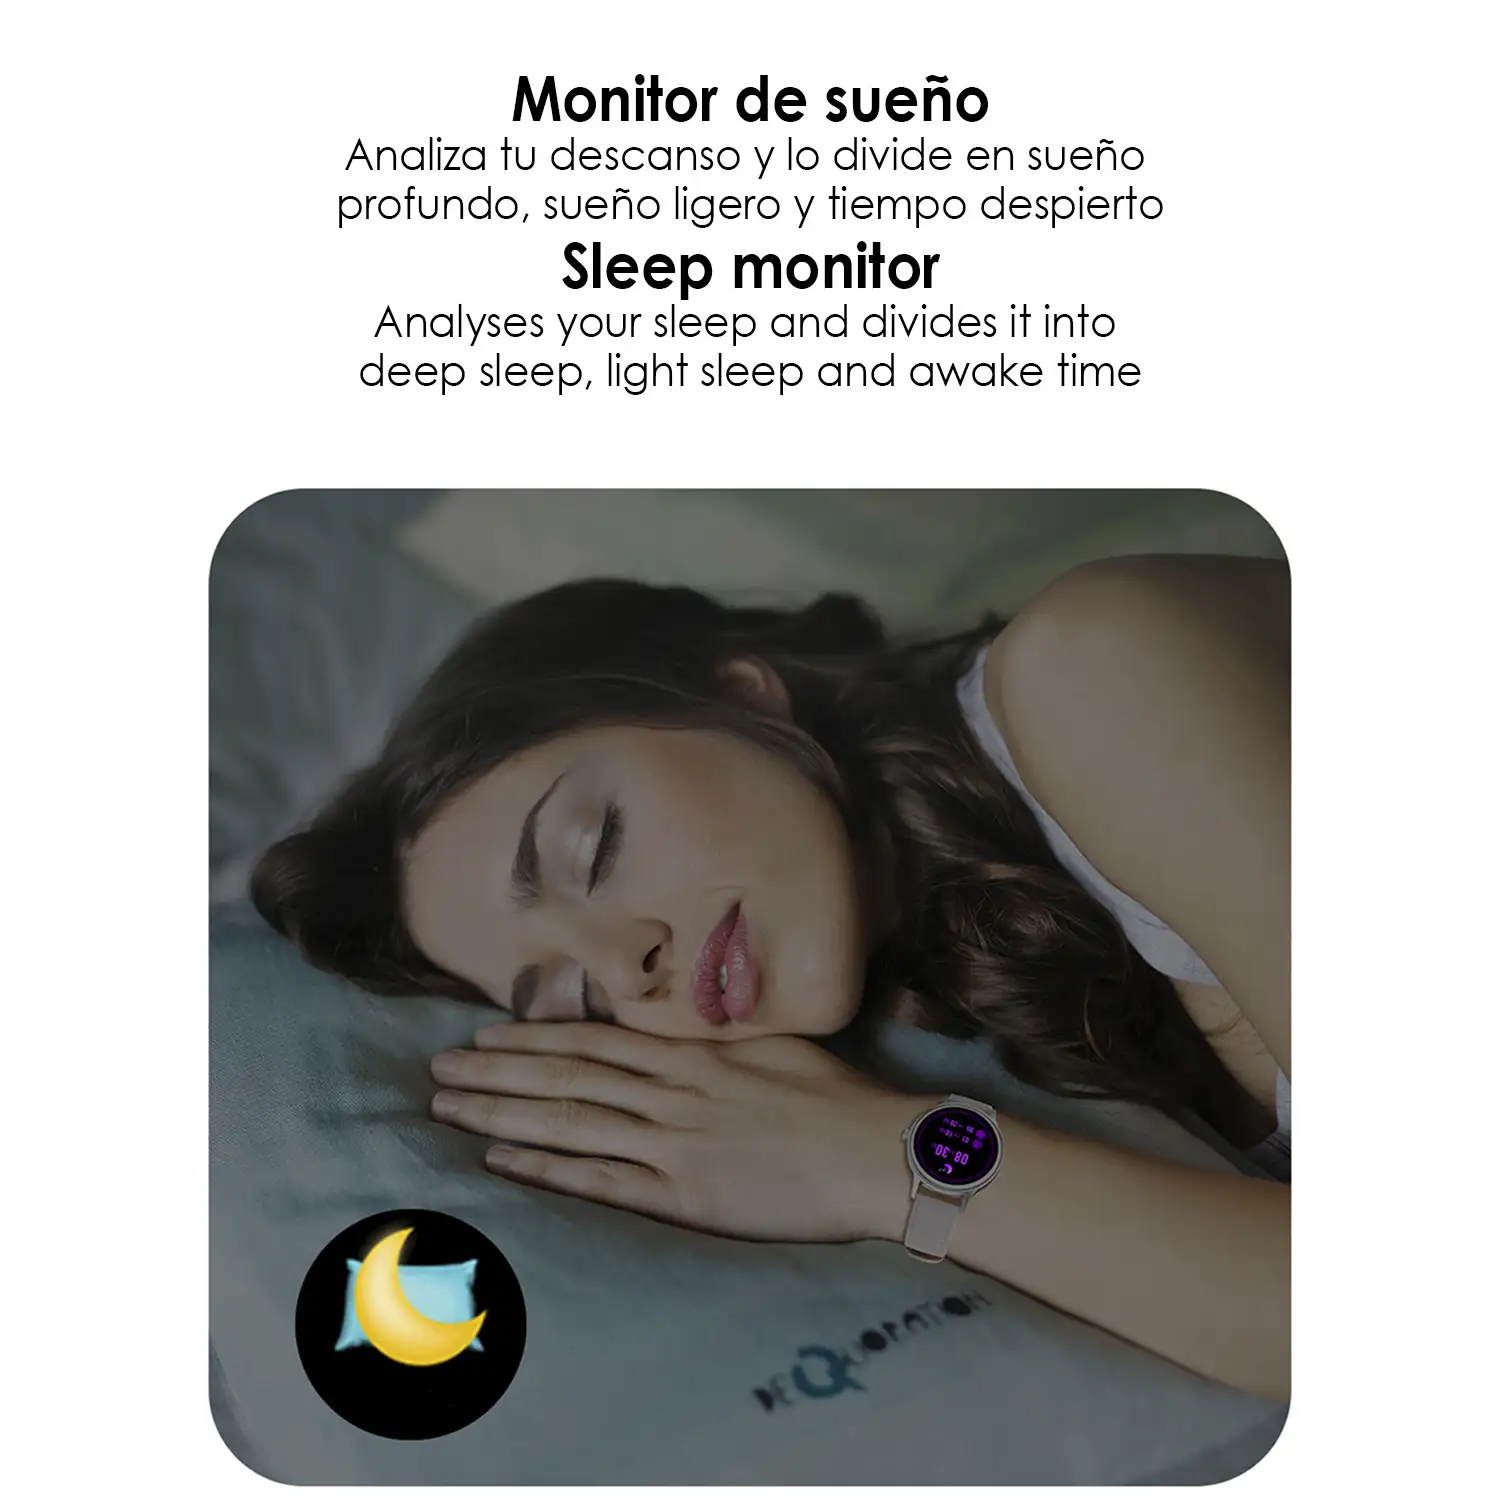 Smartwatch DT66 con pulsera de acero. Monitor de tensión y oxígeno en sangre. Varios modos deportivos. Notificaciones para iOS y Android.